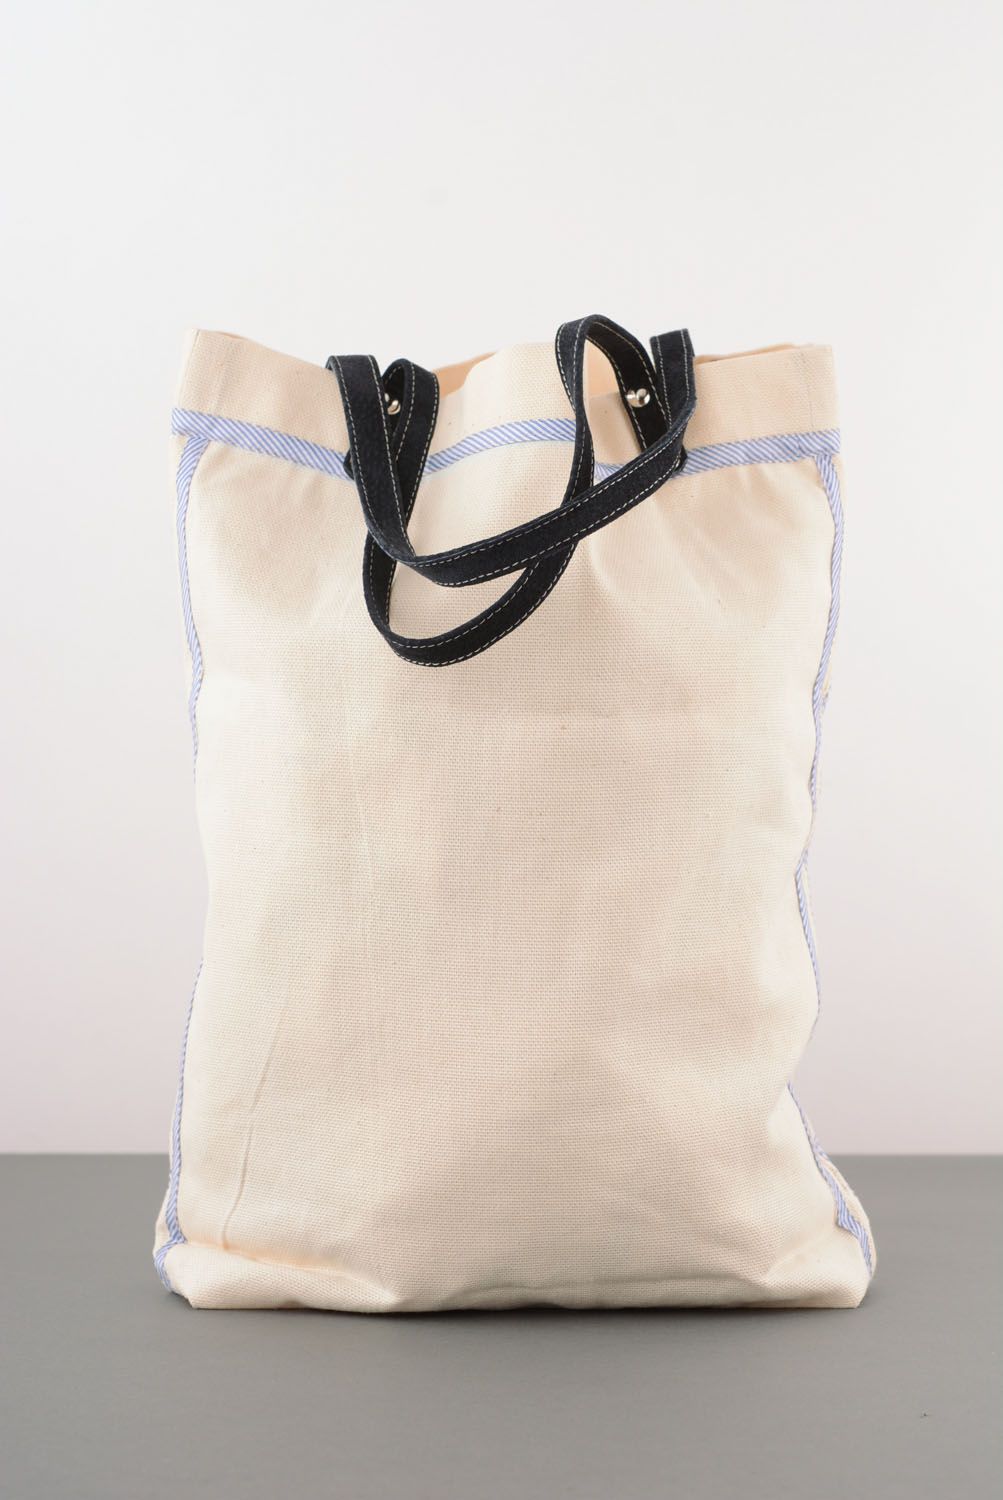 Текстильная сумка с кожаными ручками фото 2